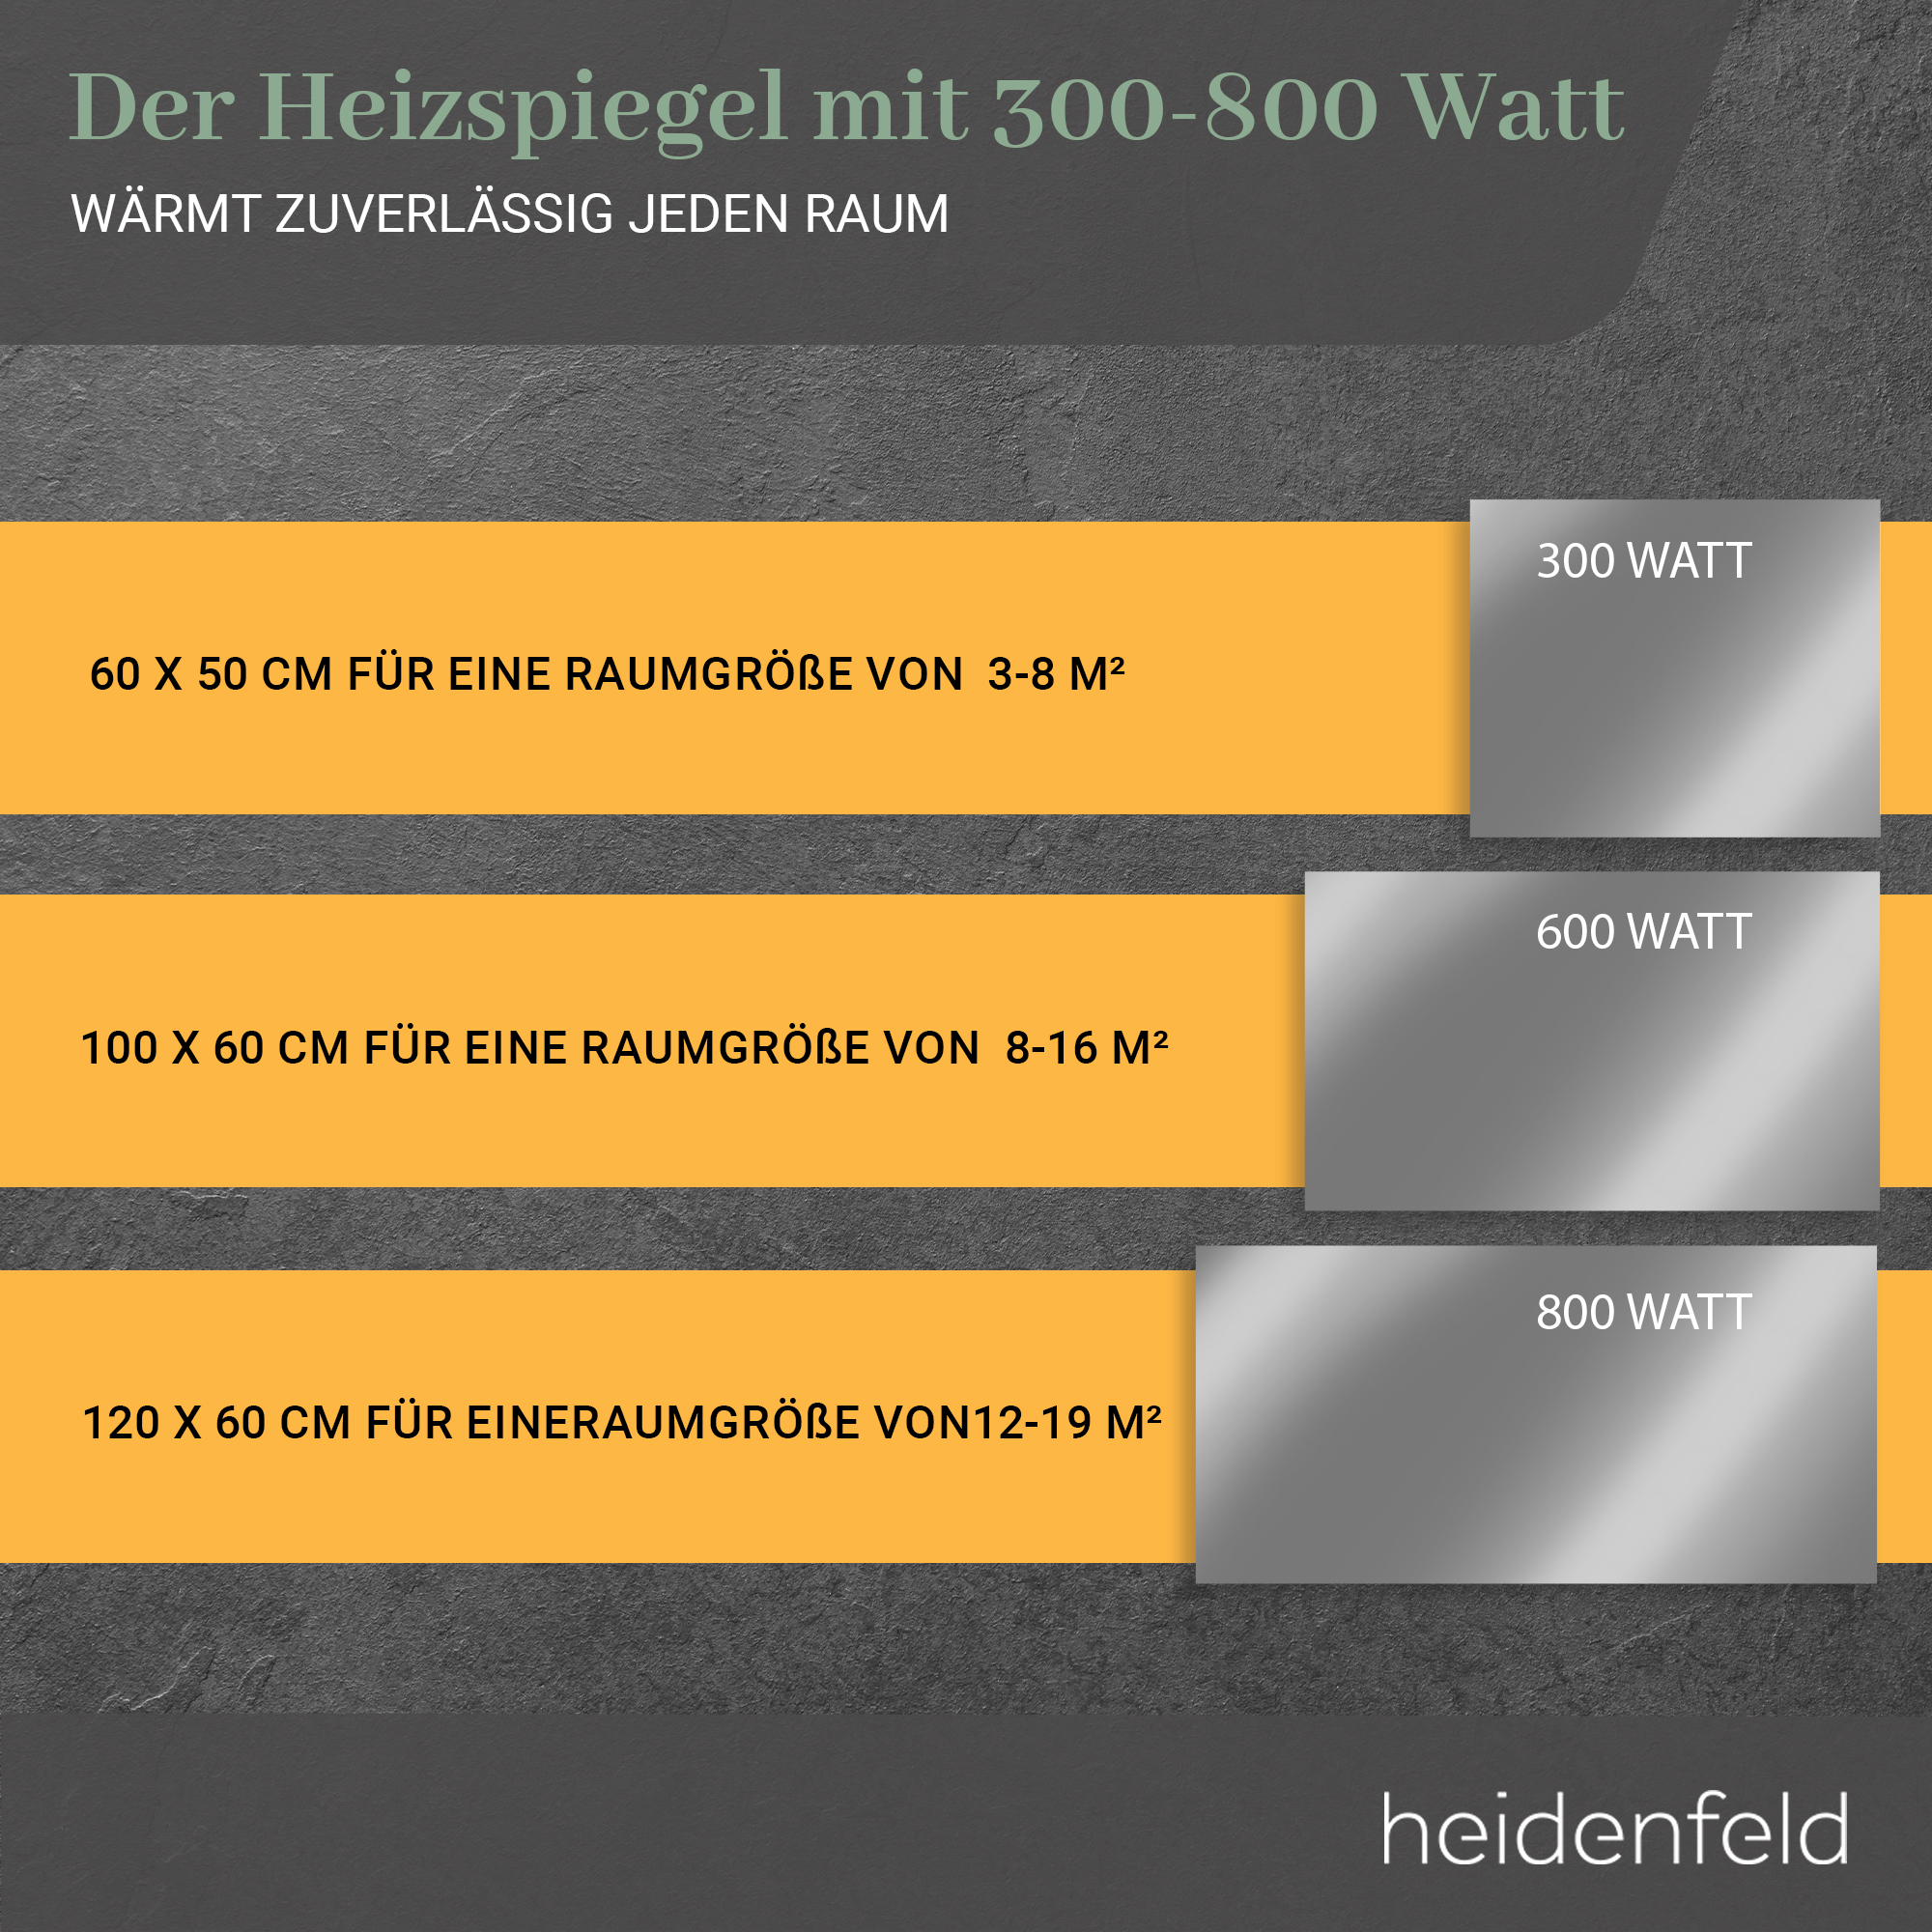 Heizspiegel HF-HS100 HEIDENFELD Watt) (800